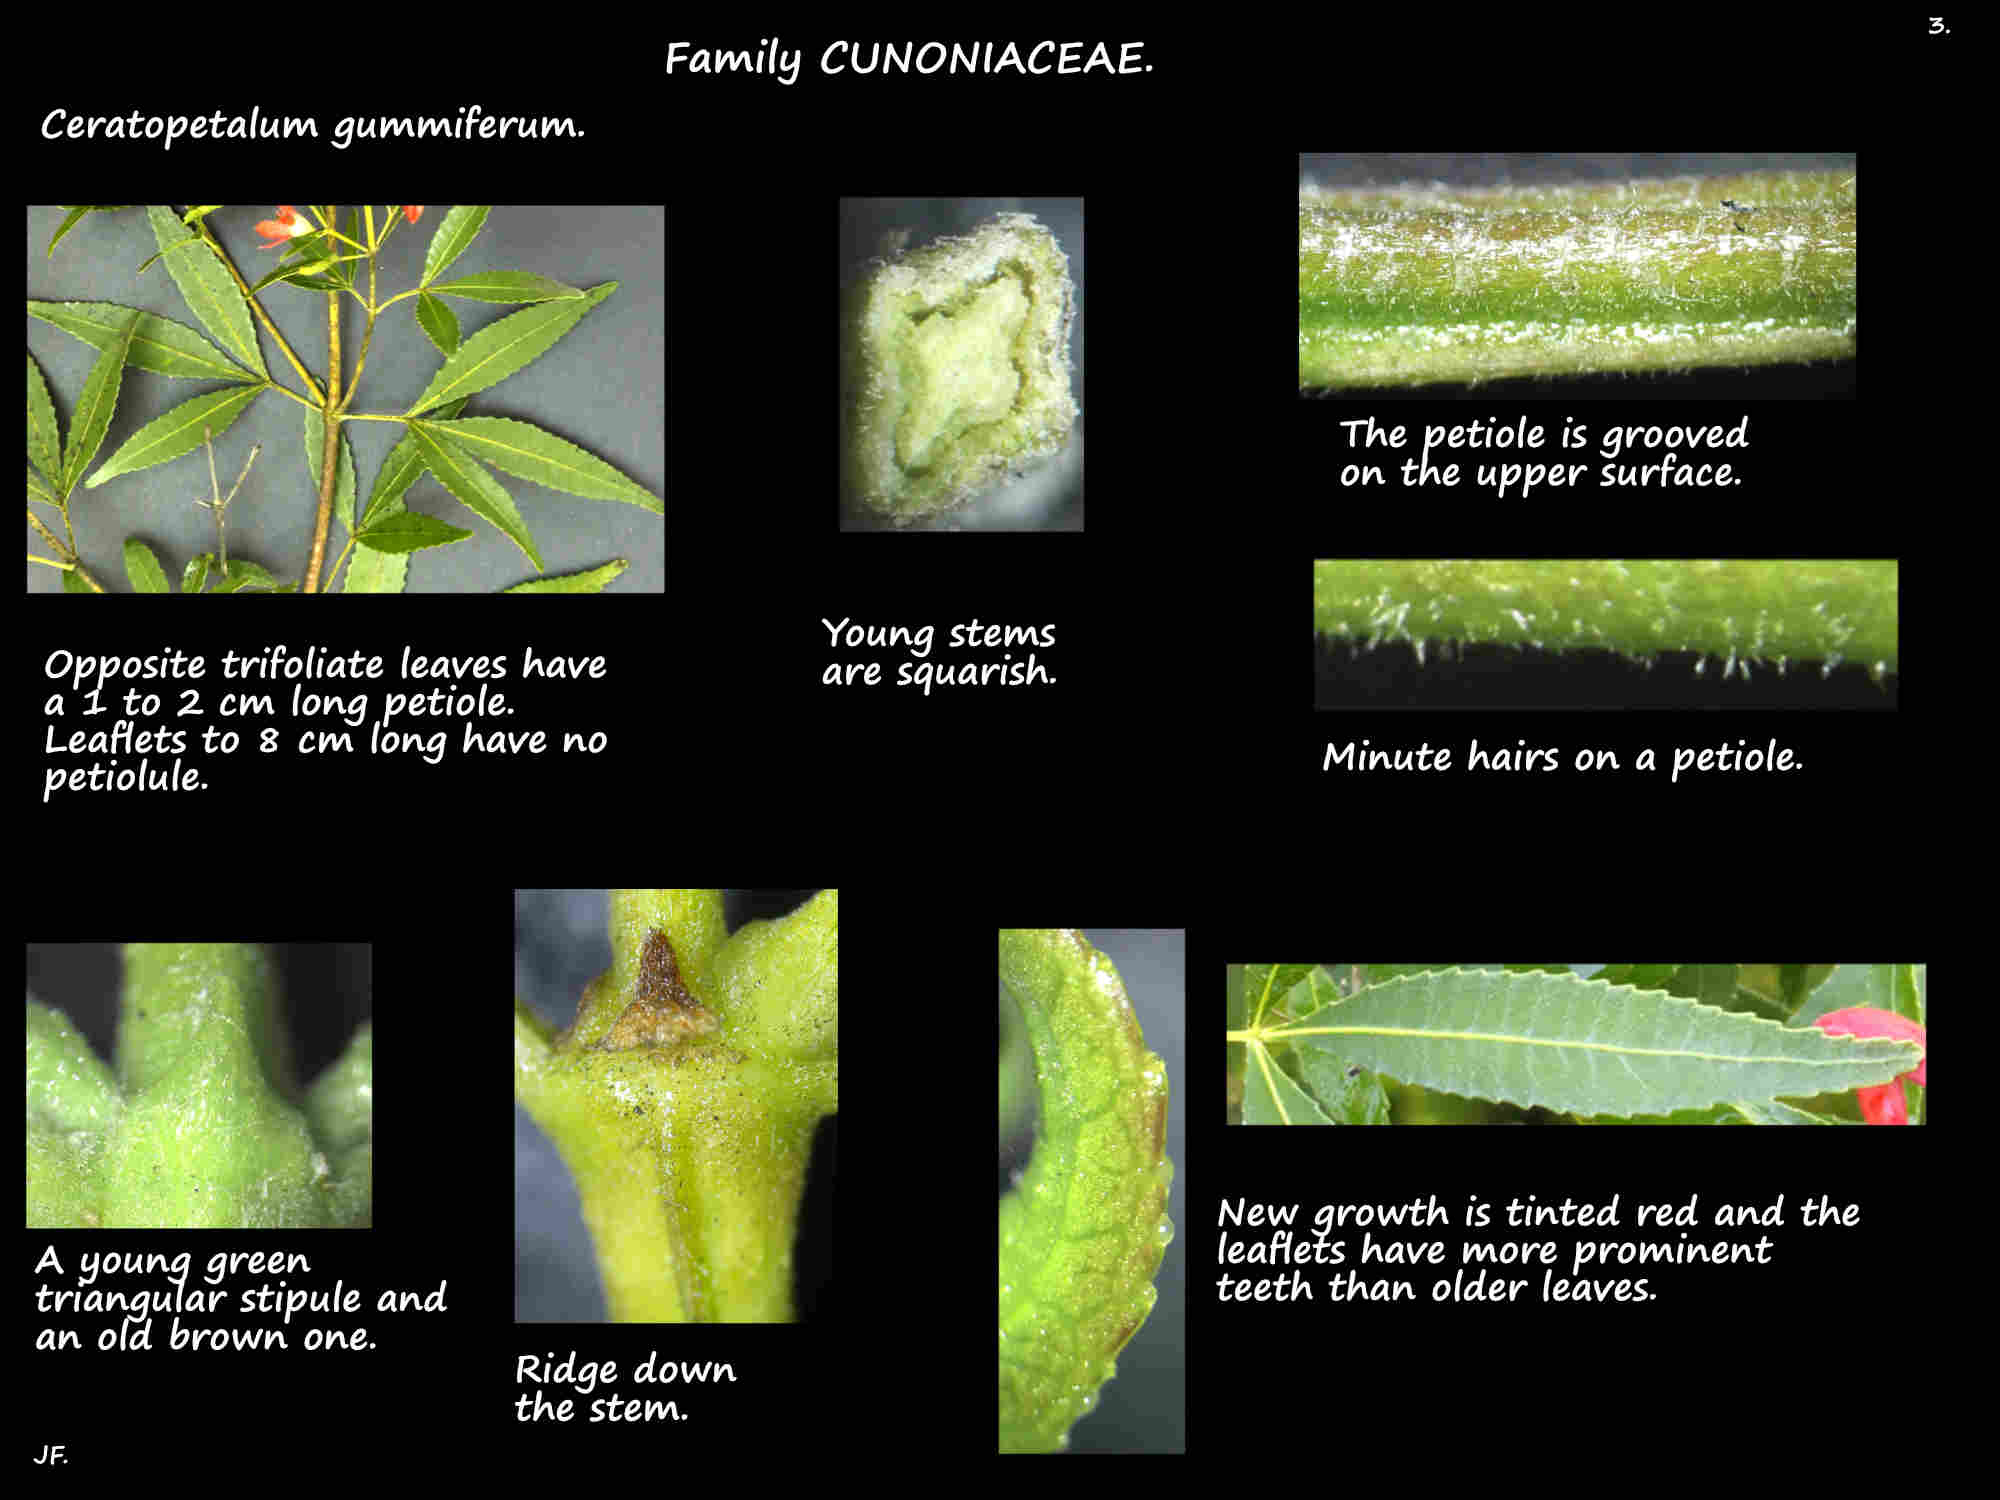 3 Ceratopetalum gummiferum trifoliate leaves